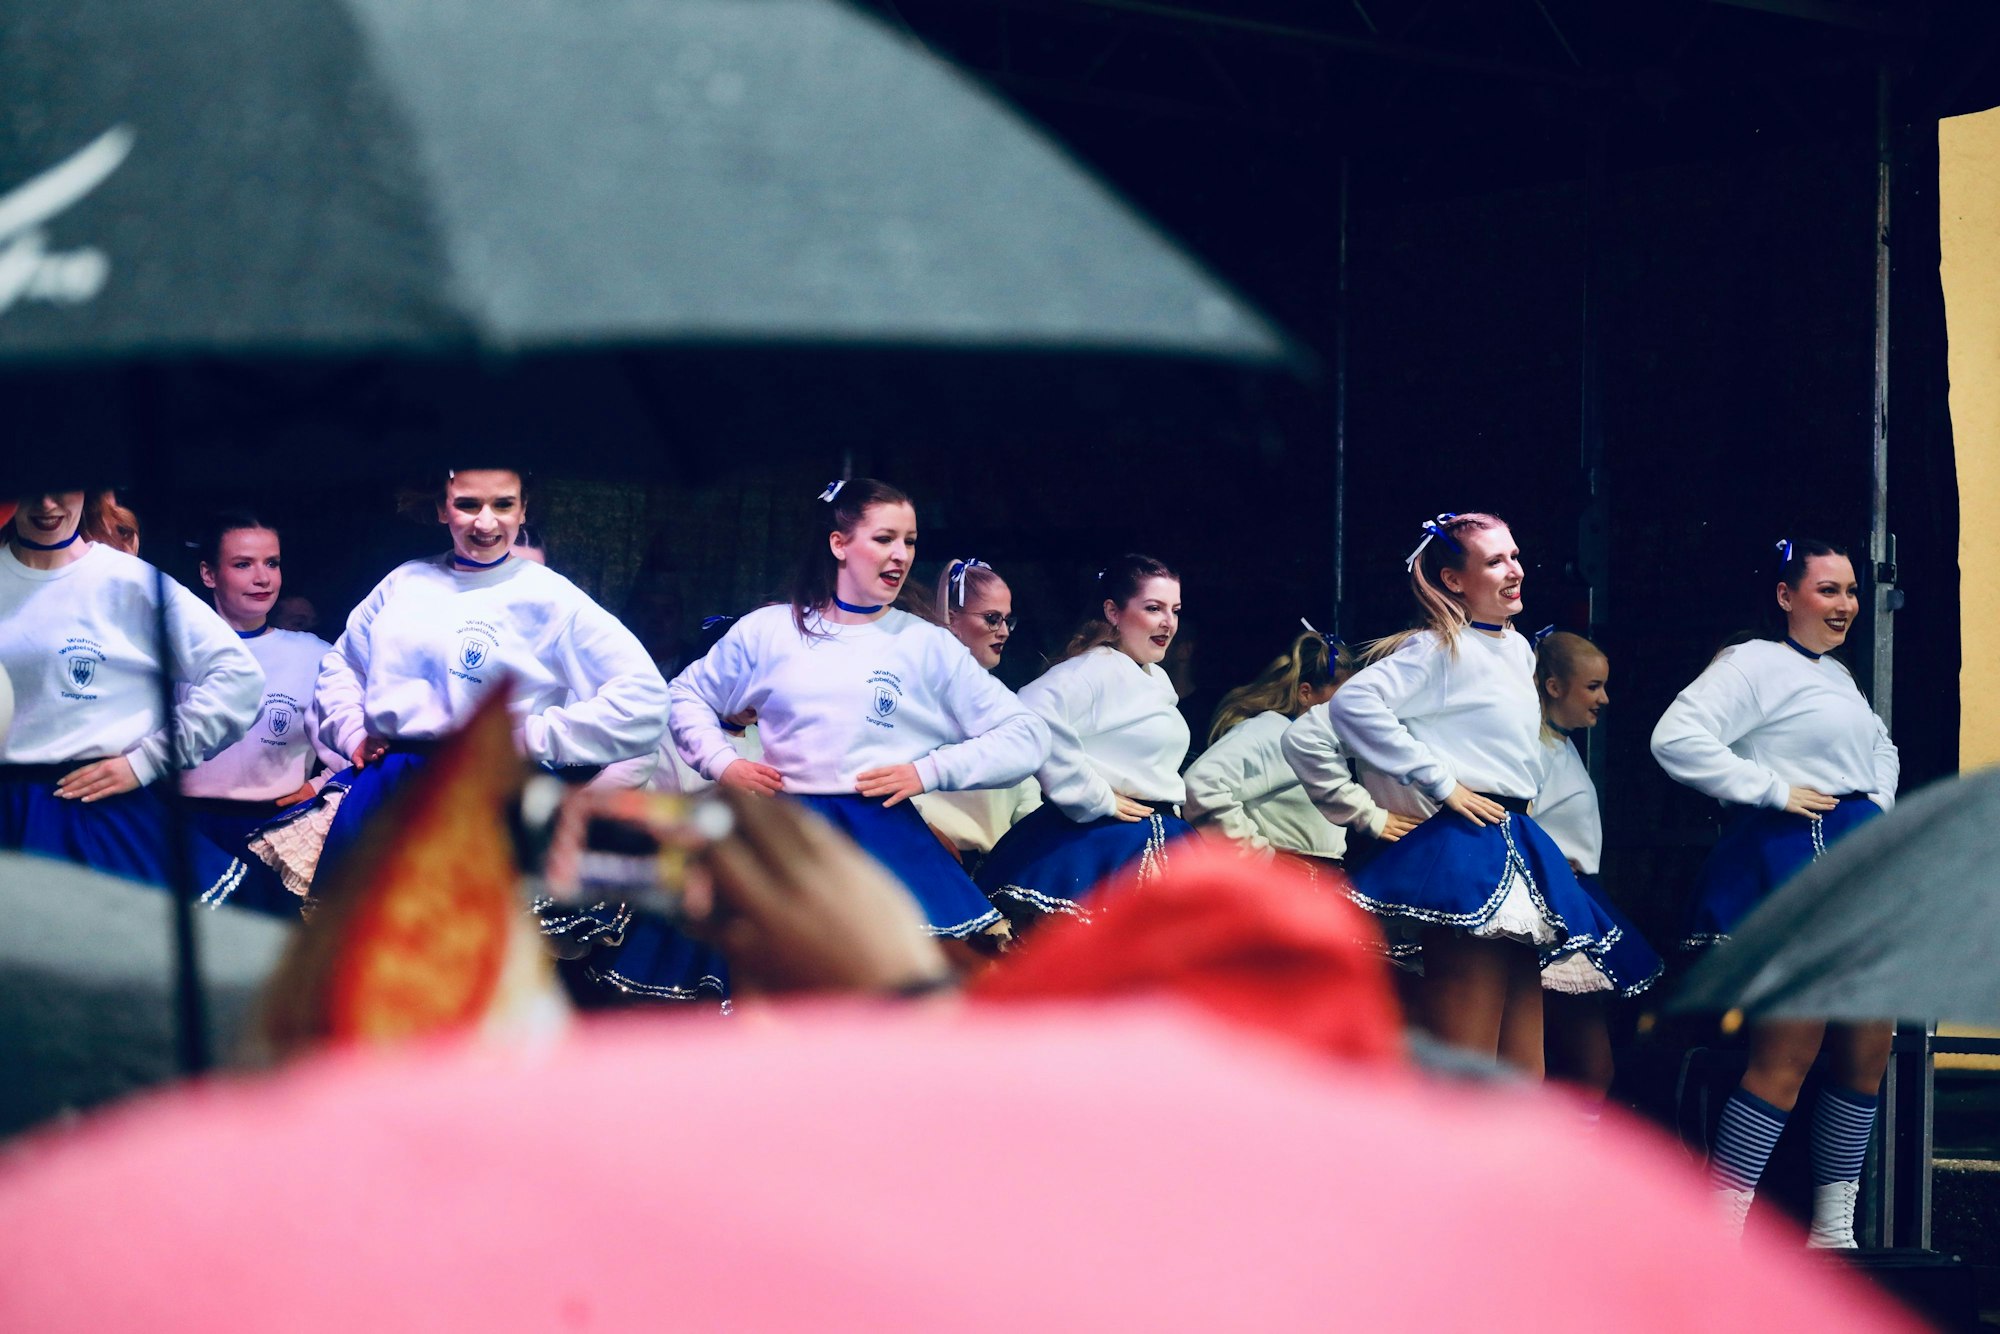 Blick durch Regenschirme hinweg auf eine Mädchen-Tanzgruppe, die auf der Bühne ihren Auftritt hat.